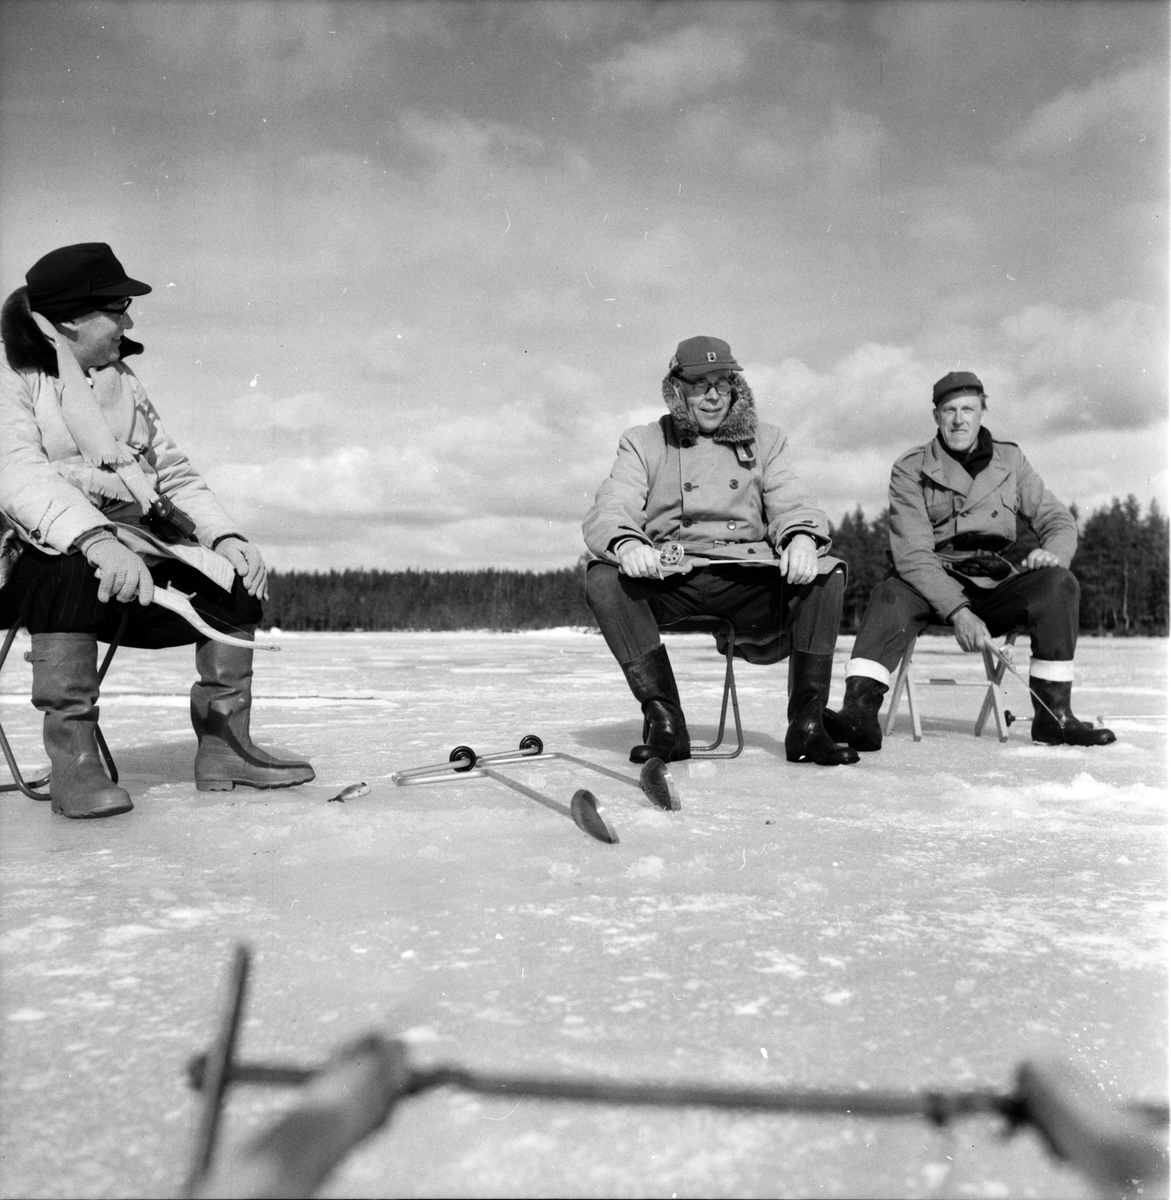 Hälsen,
Fiske på is,
S.Weit, Johan Svärd, P.W. Häger,
28 Mars 1961